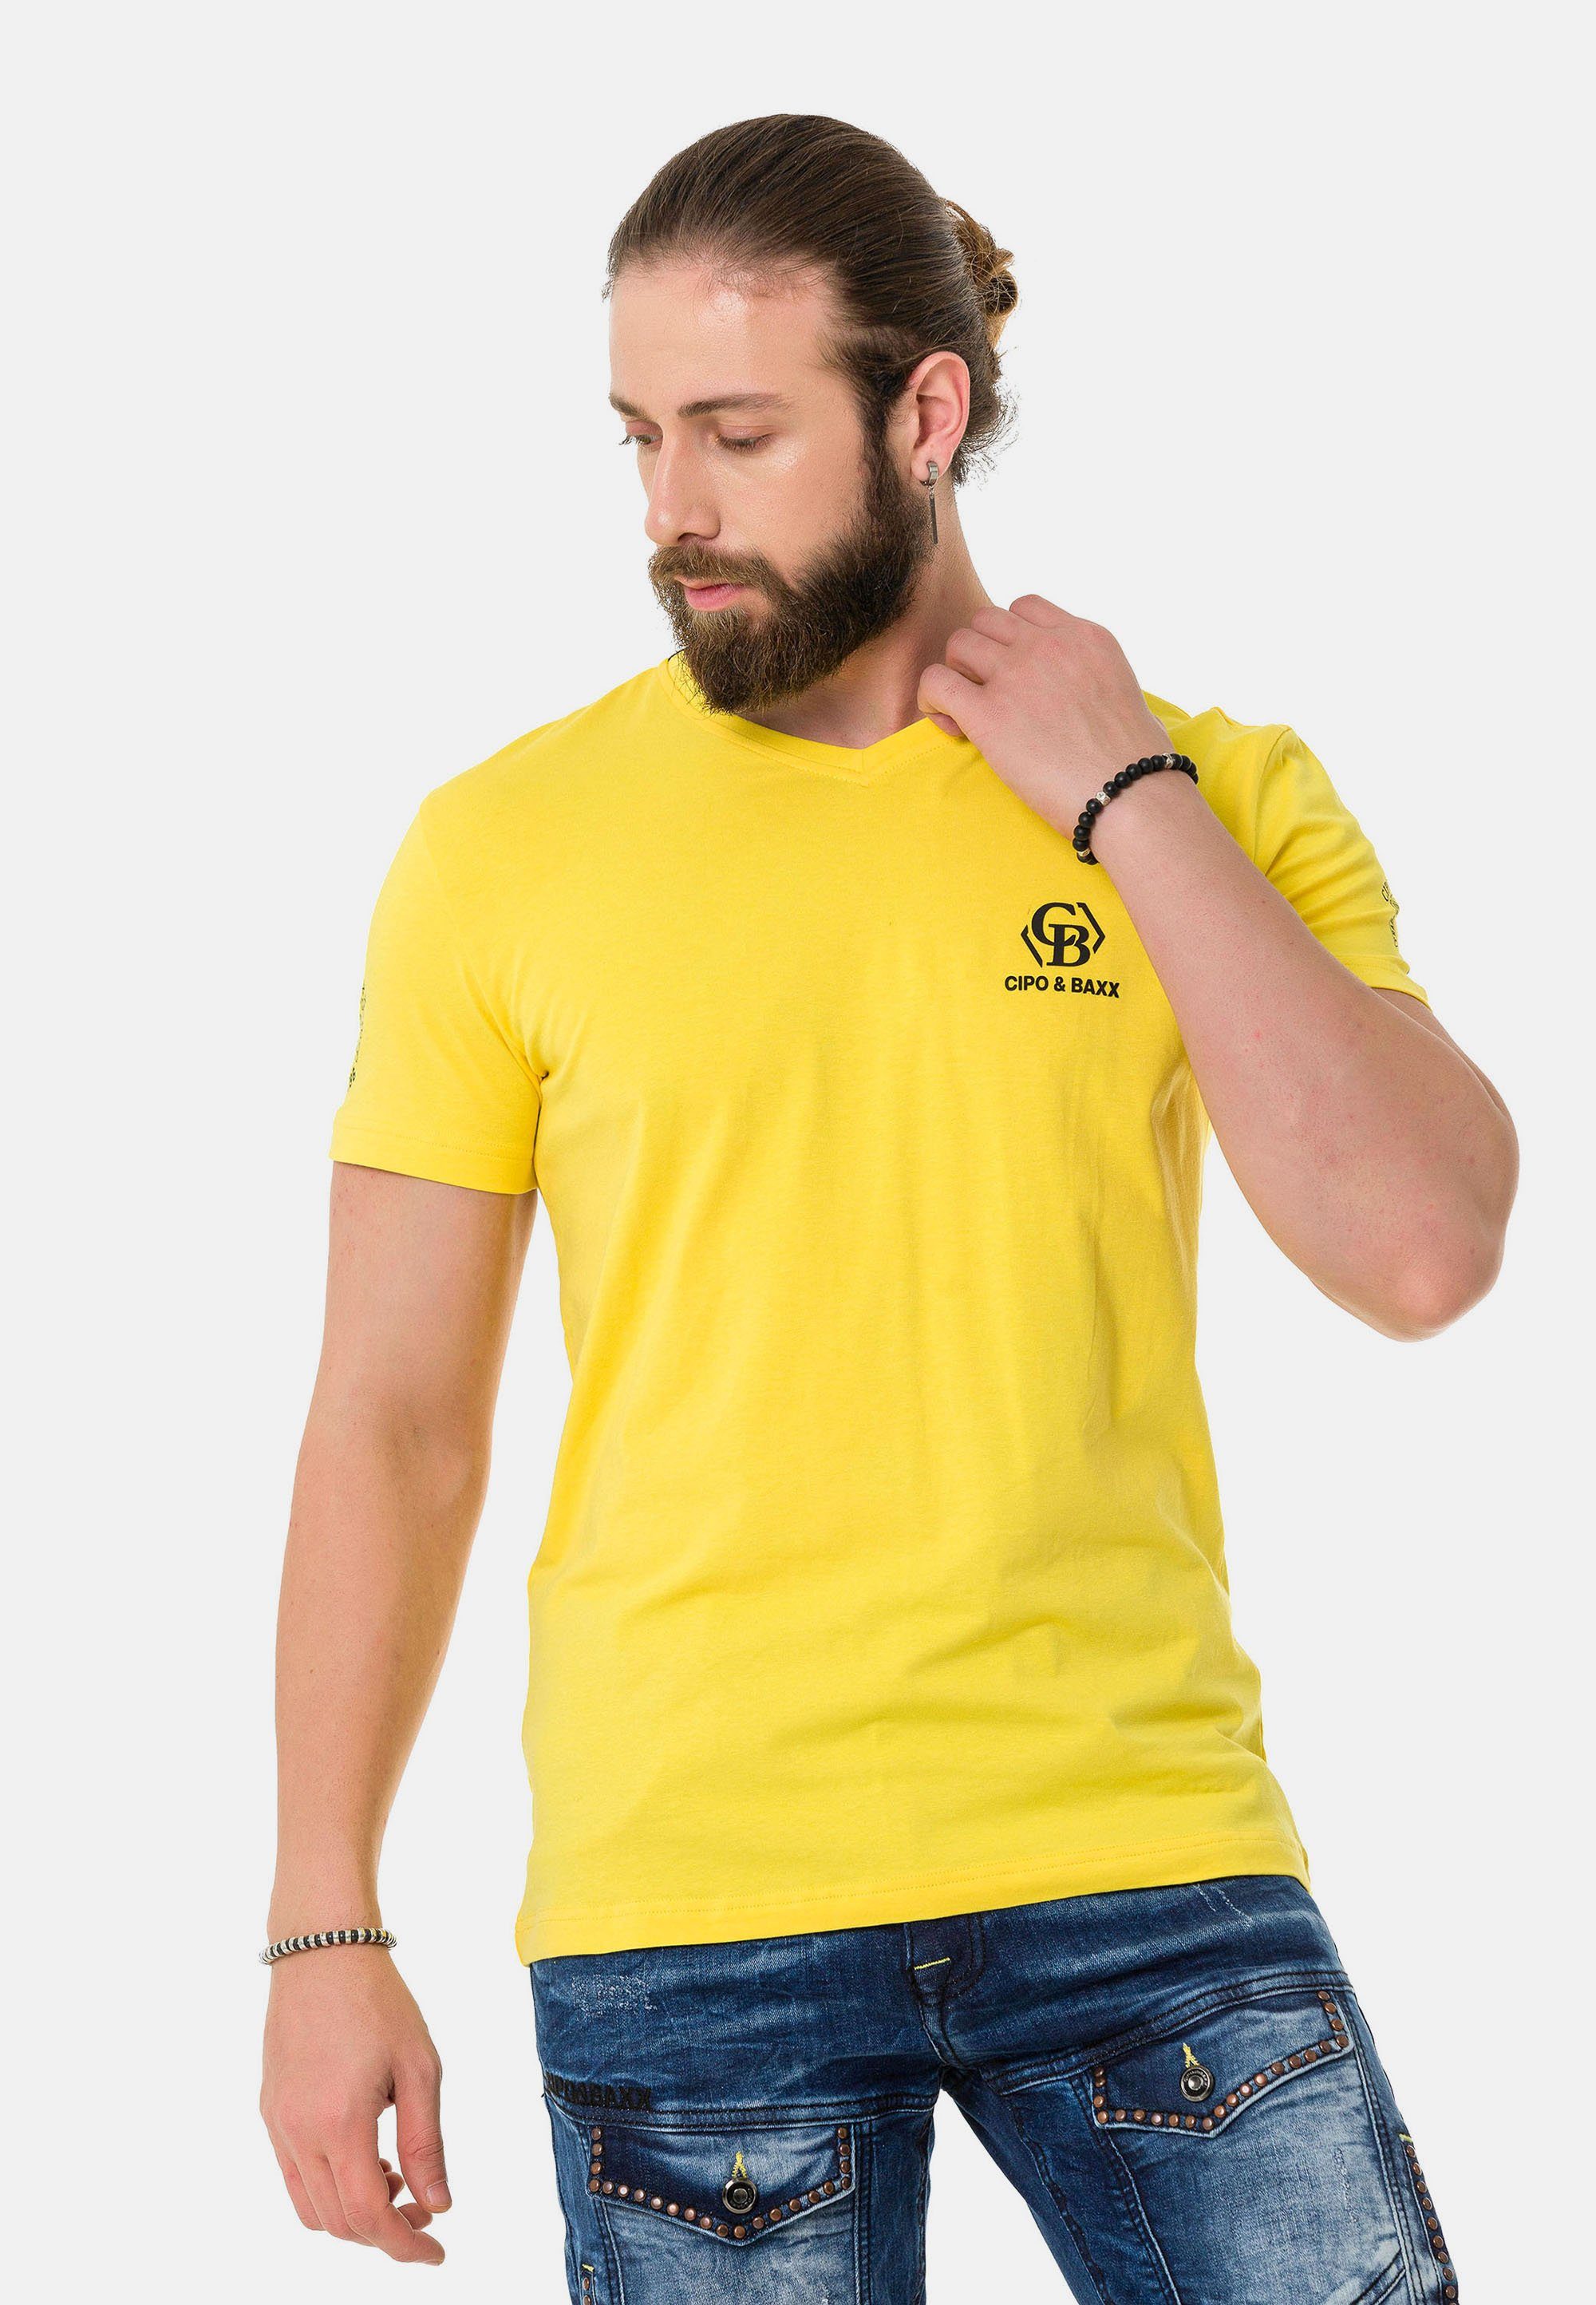 Cipo & Baxx T-Shirt mit dezenten Markenlogos gelb